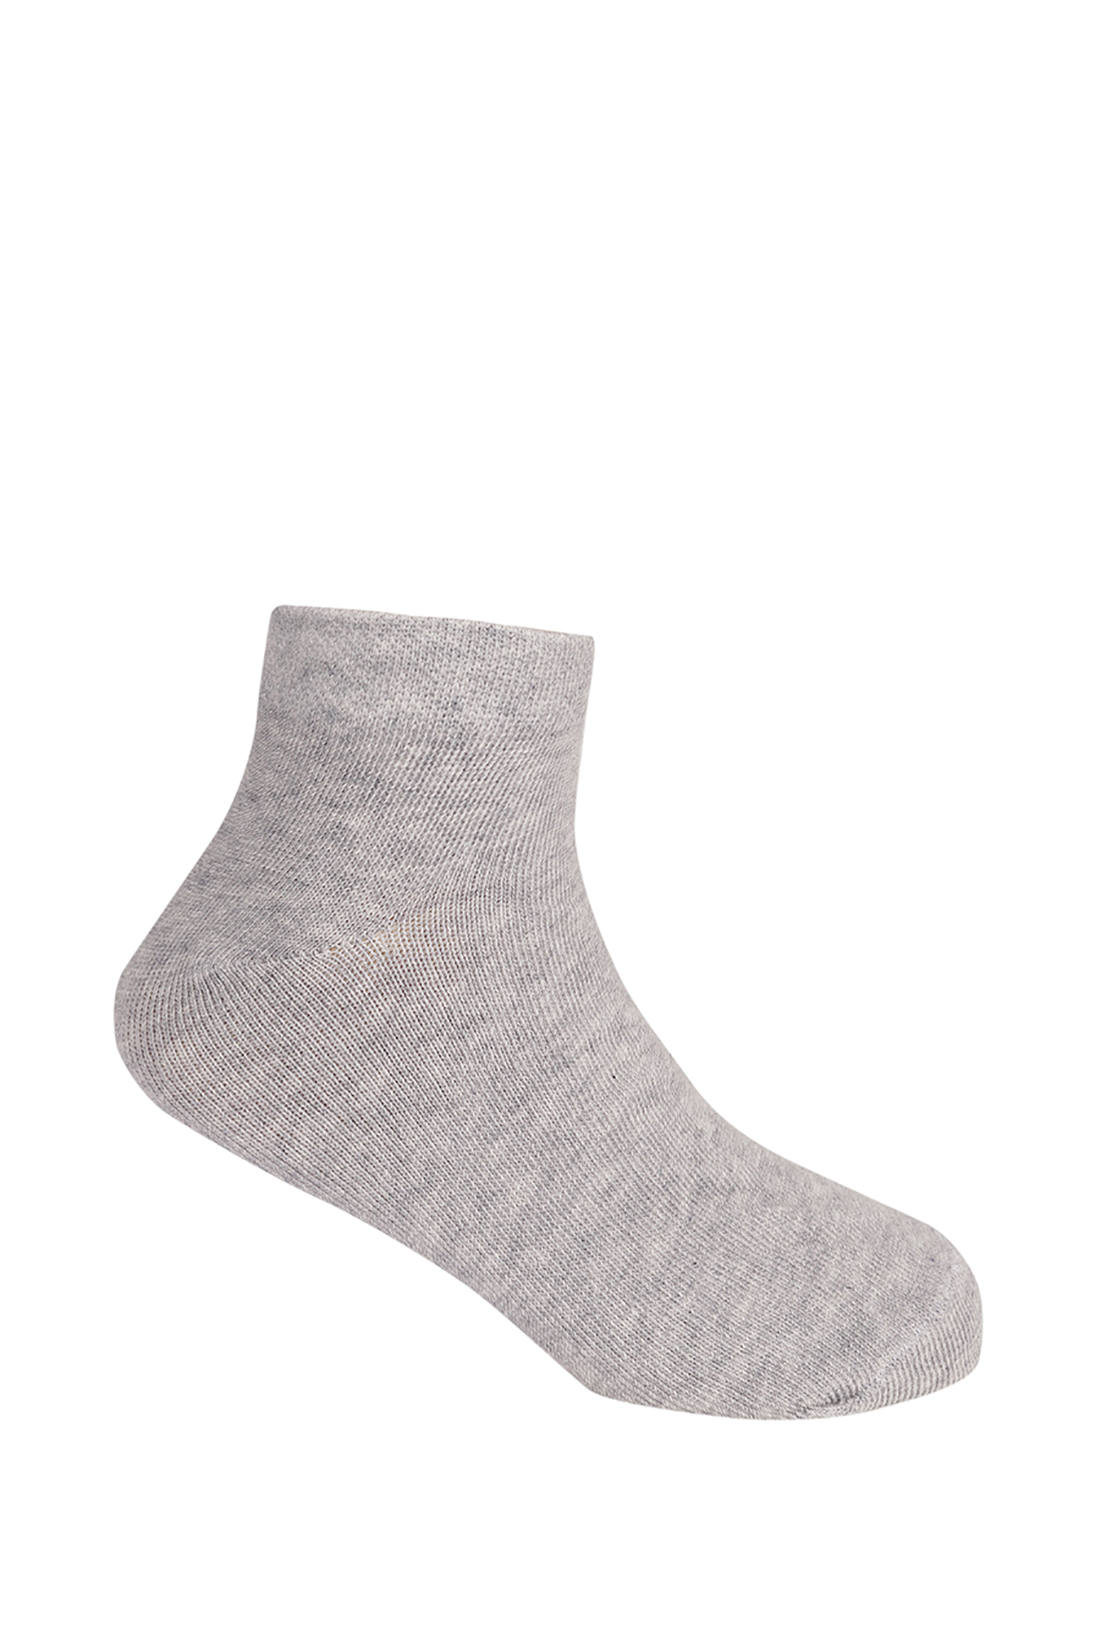 Носки для девочки (арт. baon BK390014), размер 29/31, цвет silver melange#серый